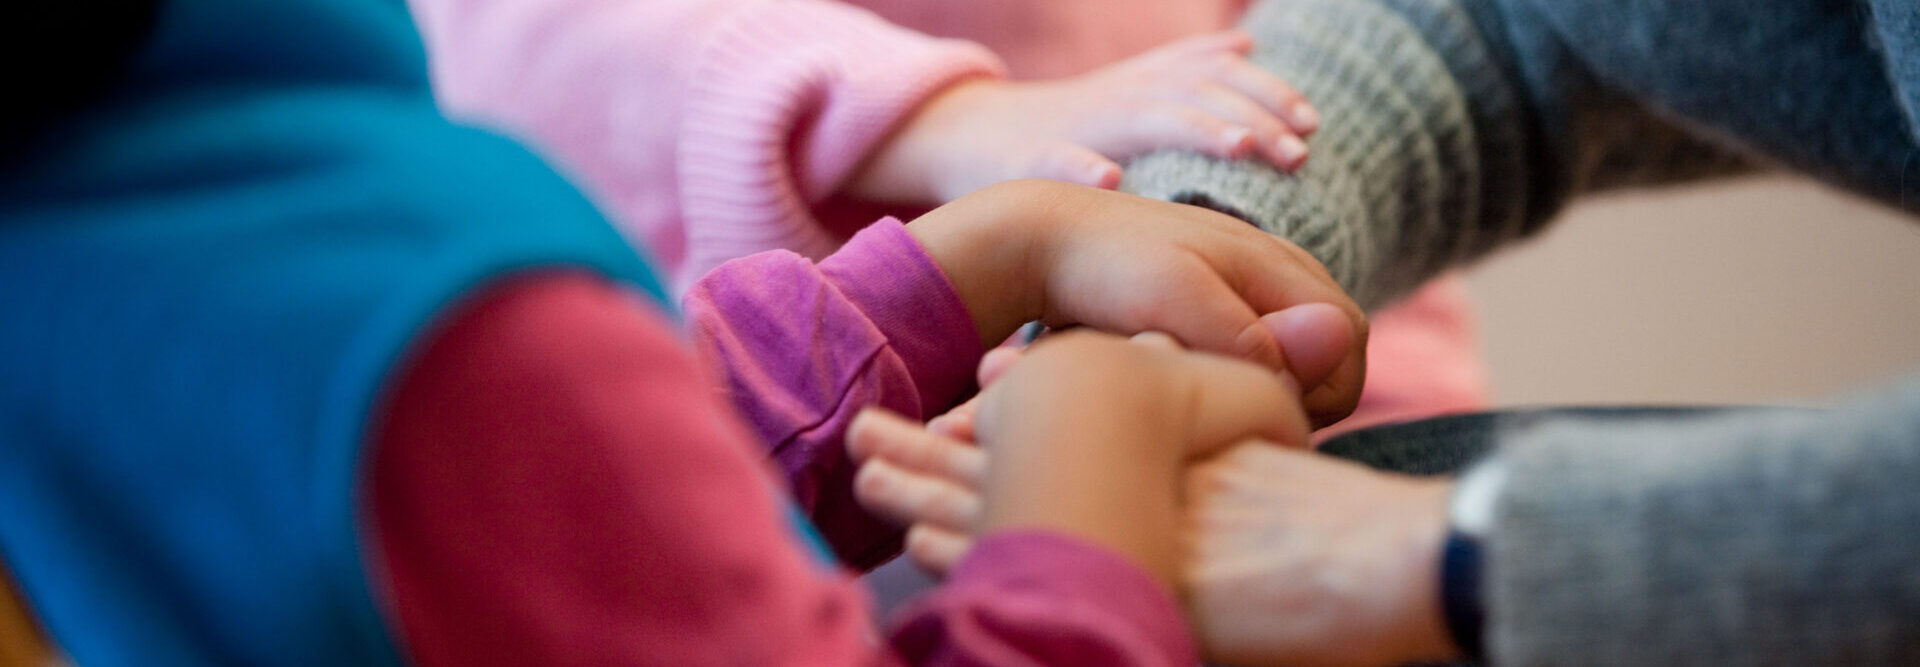 Le mani di un bambino si appoggiano su quelle di una persona adulta. La mano di un altro bambino è appoggiata sull'avambraccio dell'adulto. L'immagine irradia vicinanza e fiducia e vive nelle calde tonalità del grigio-rosa-viola-blu.